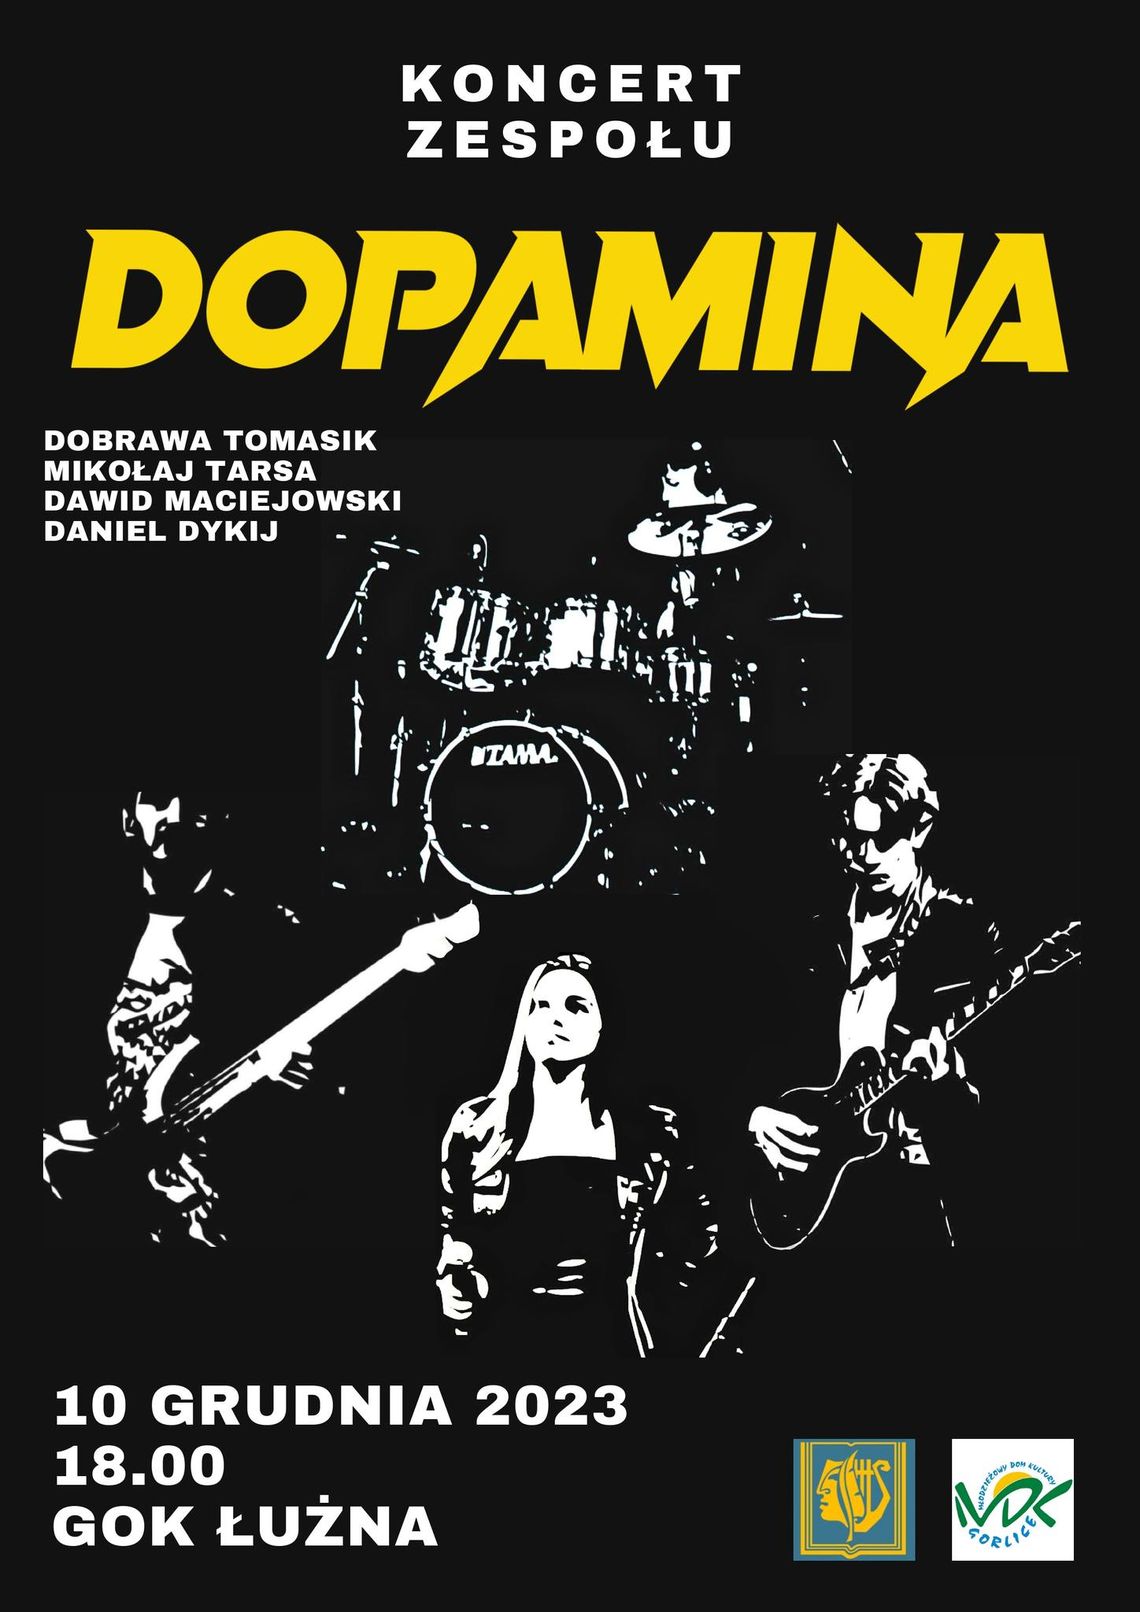 Koncert zespołu Dopamina w Łużnej | halogorlice.info